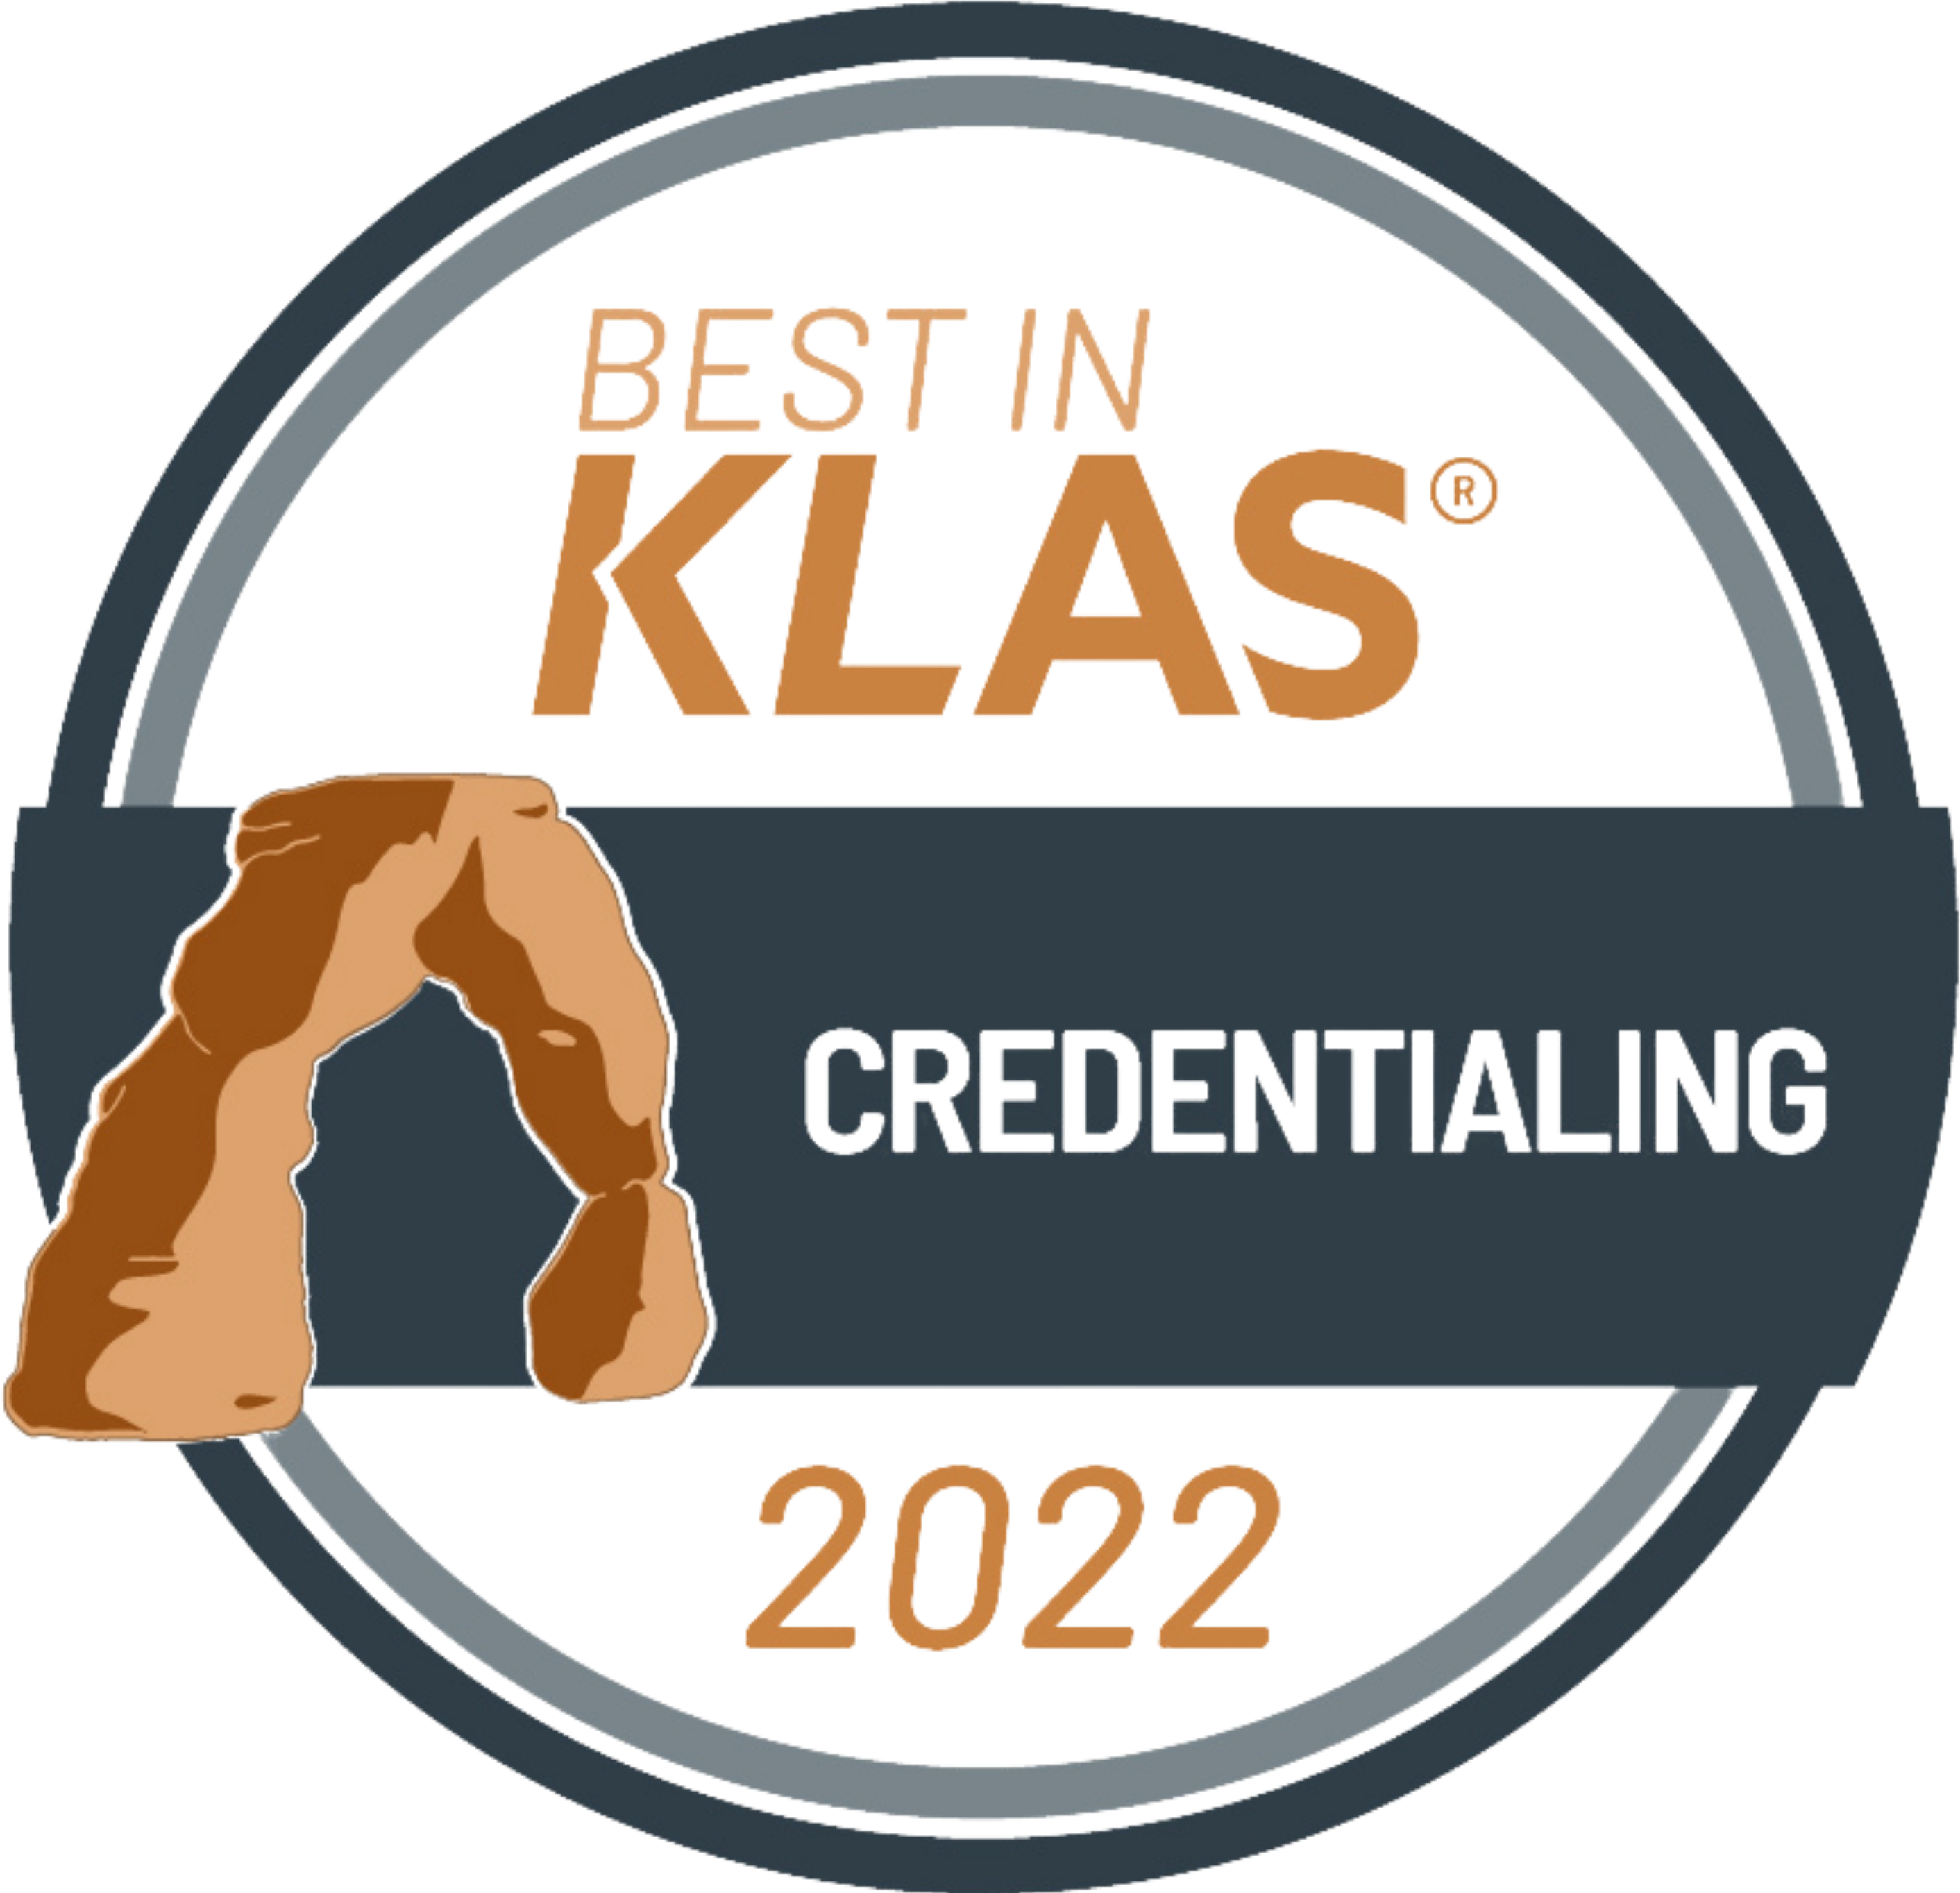 2022 KLAS Credentialing Award